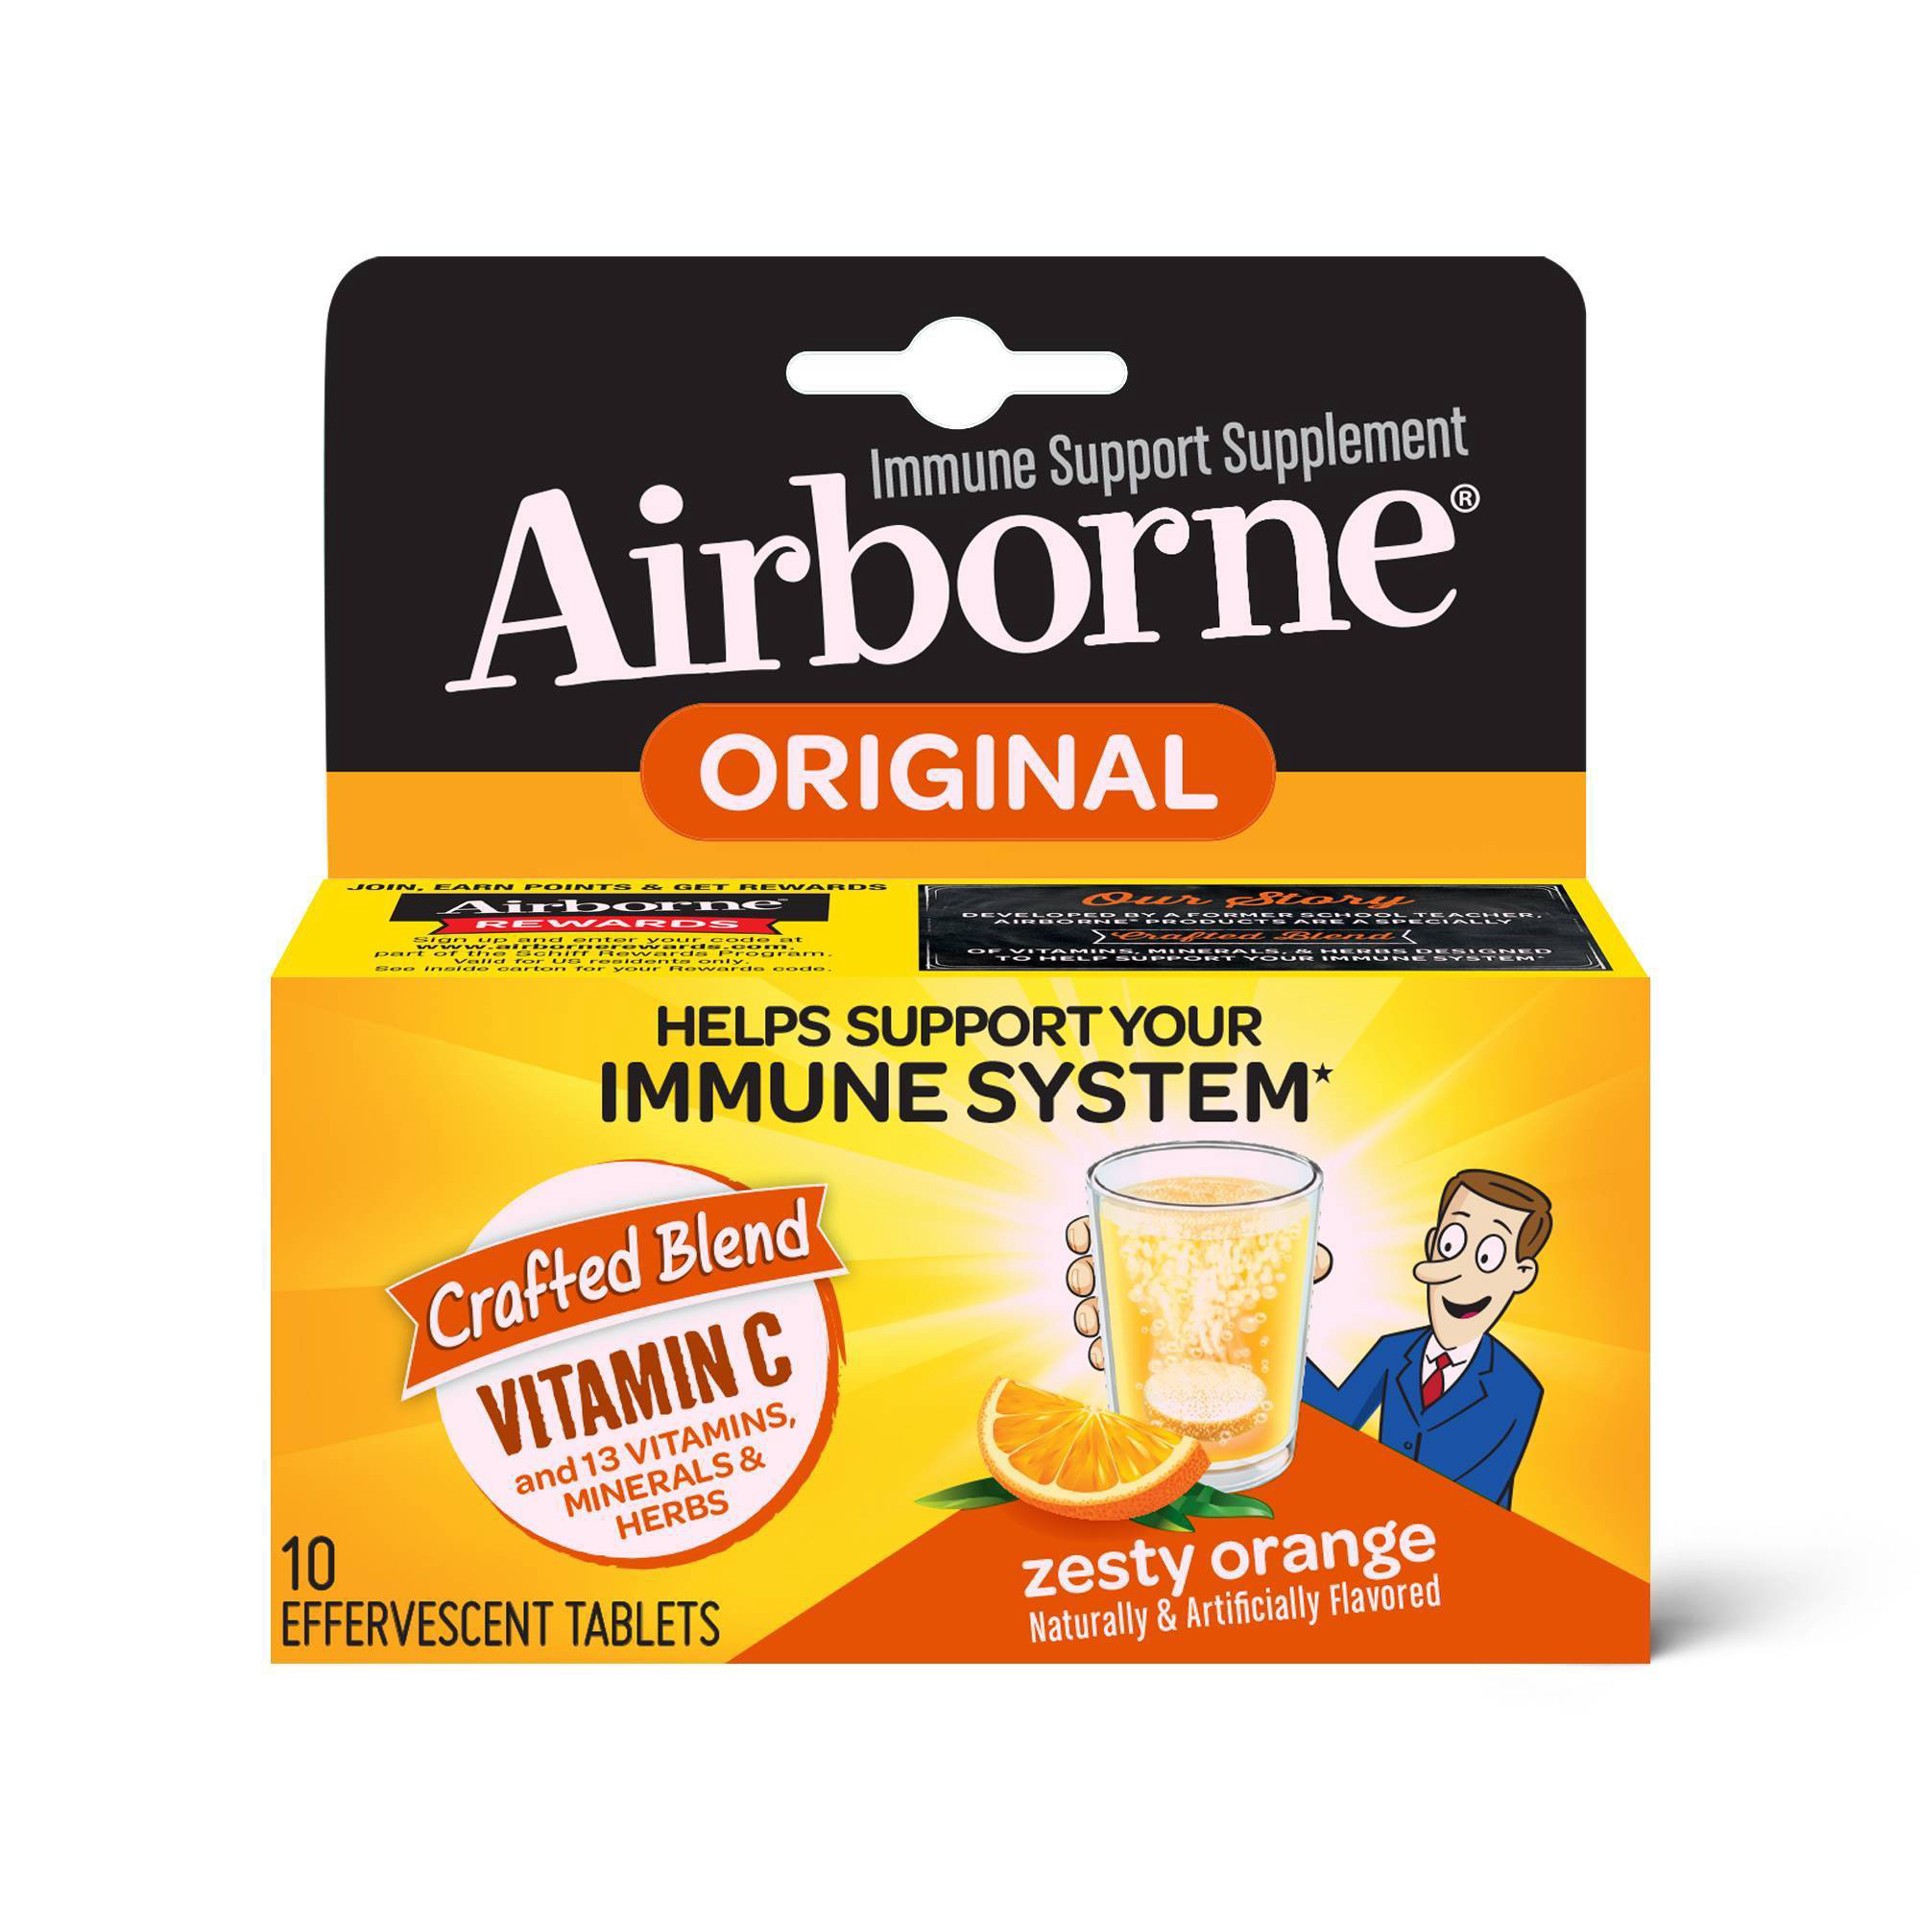 slide 1 of 98, Airborne Effervescent Immune Support Supplement Blast of Vitamin C Zesty Orange, 10 ct